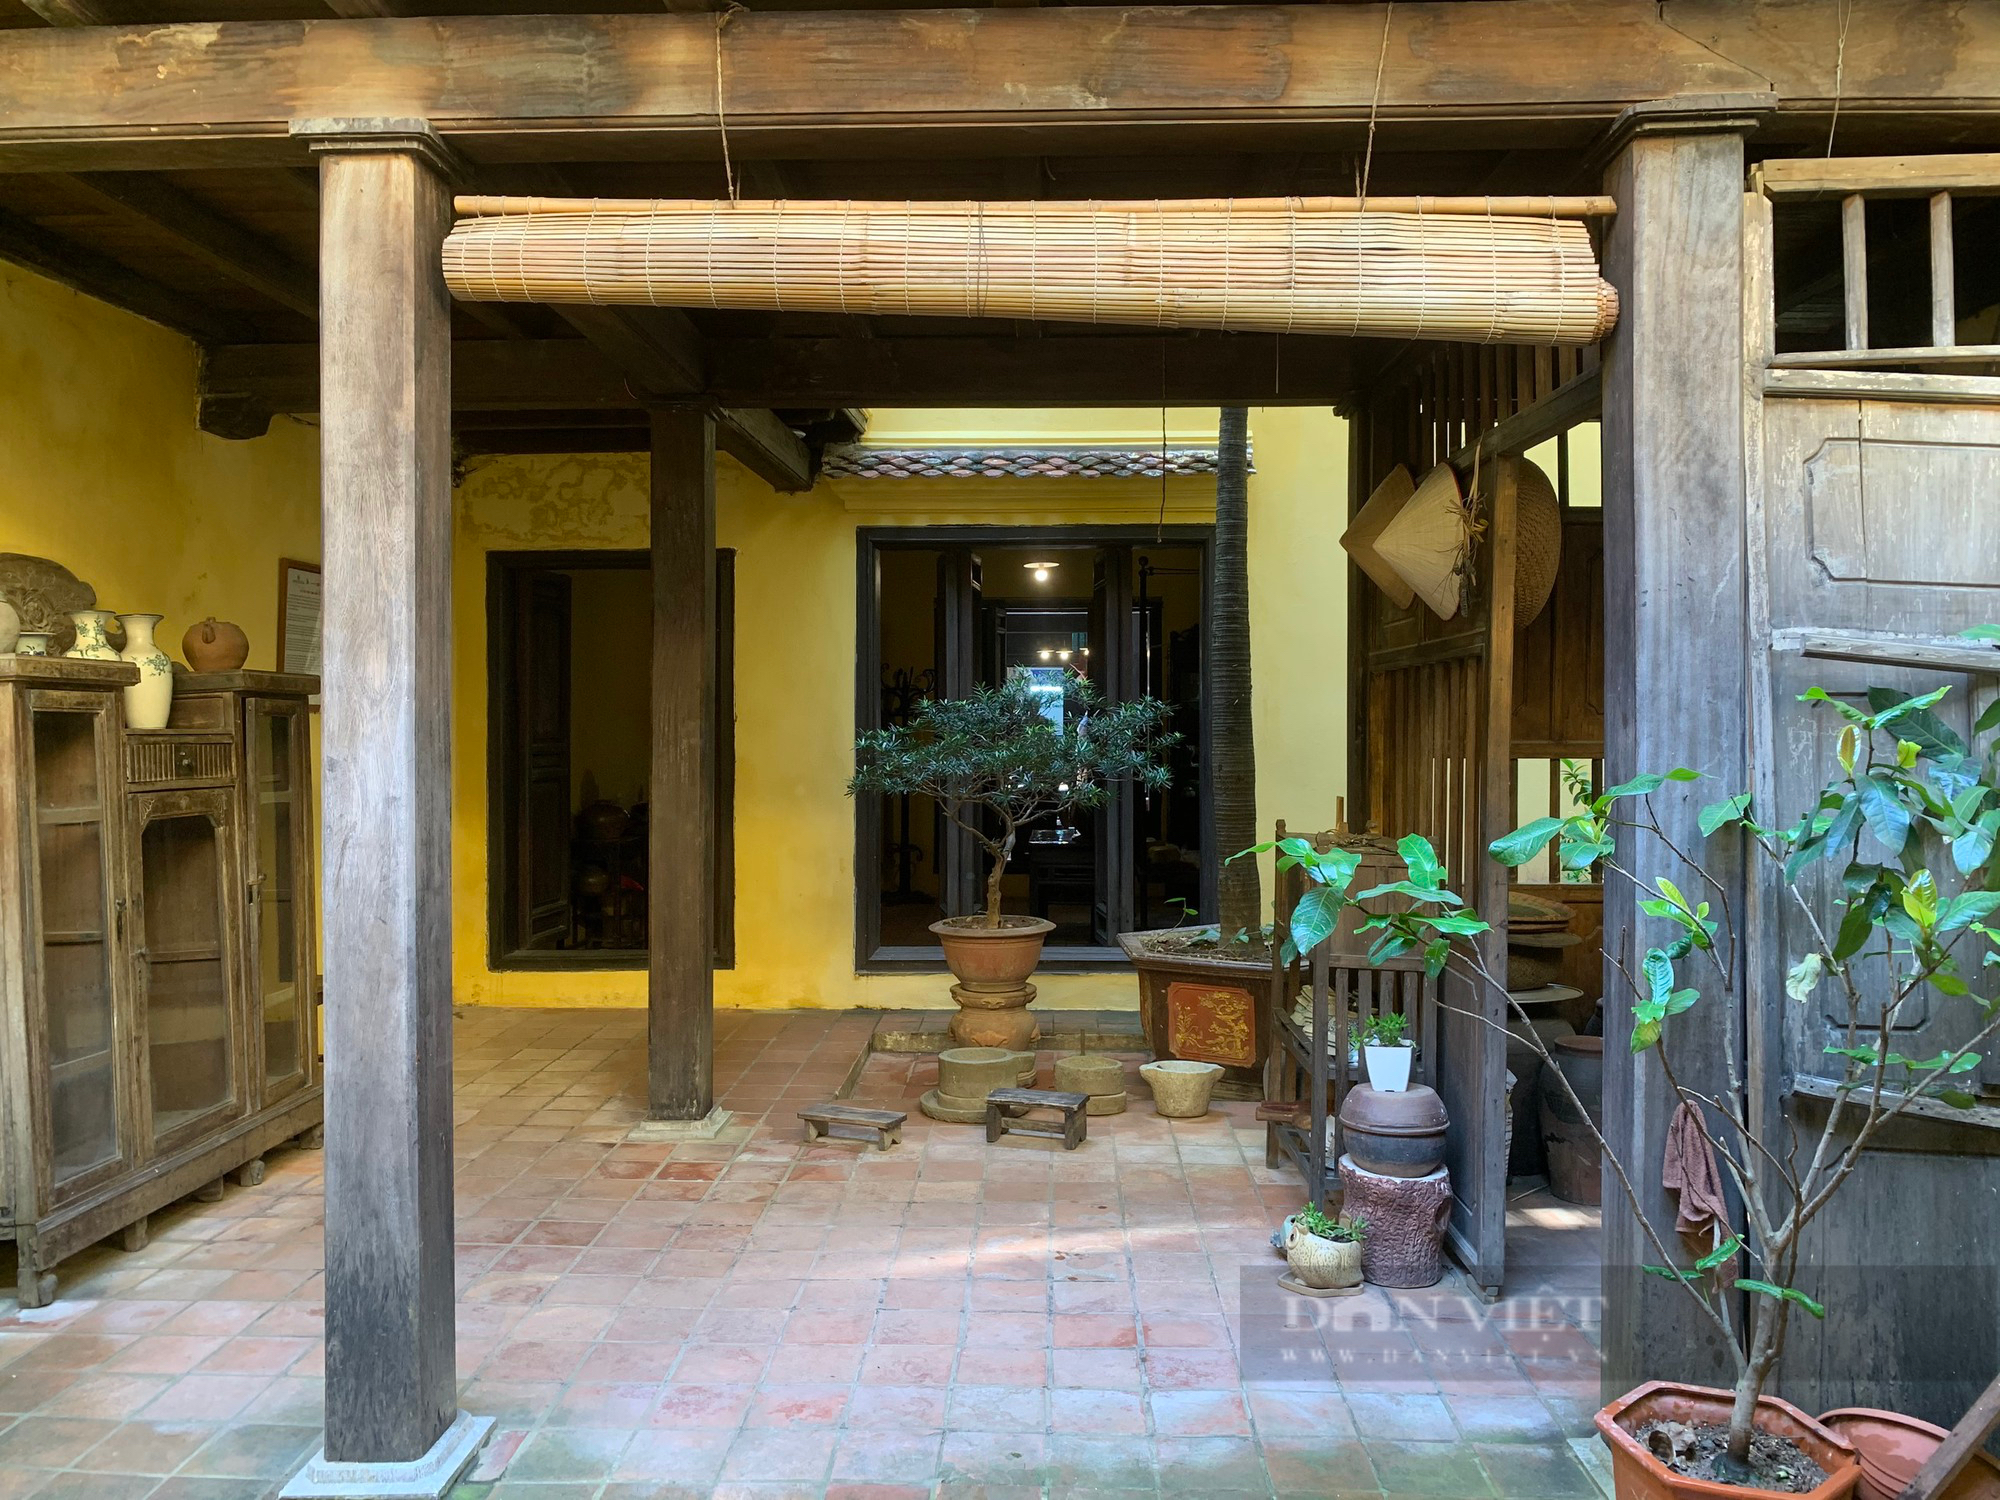 Kiến trúc độc đáo bên trong ngôi nhà được cấp "bằng di sản cấp Quốc gia" ở phố cổ Hà Nội - Ảnh 8.